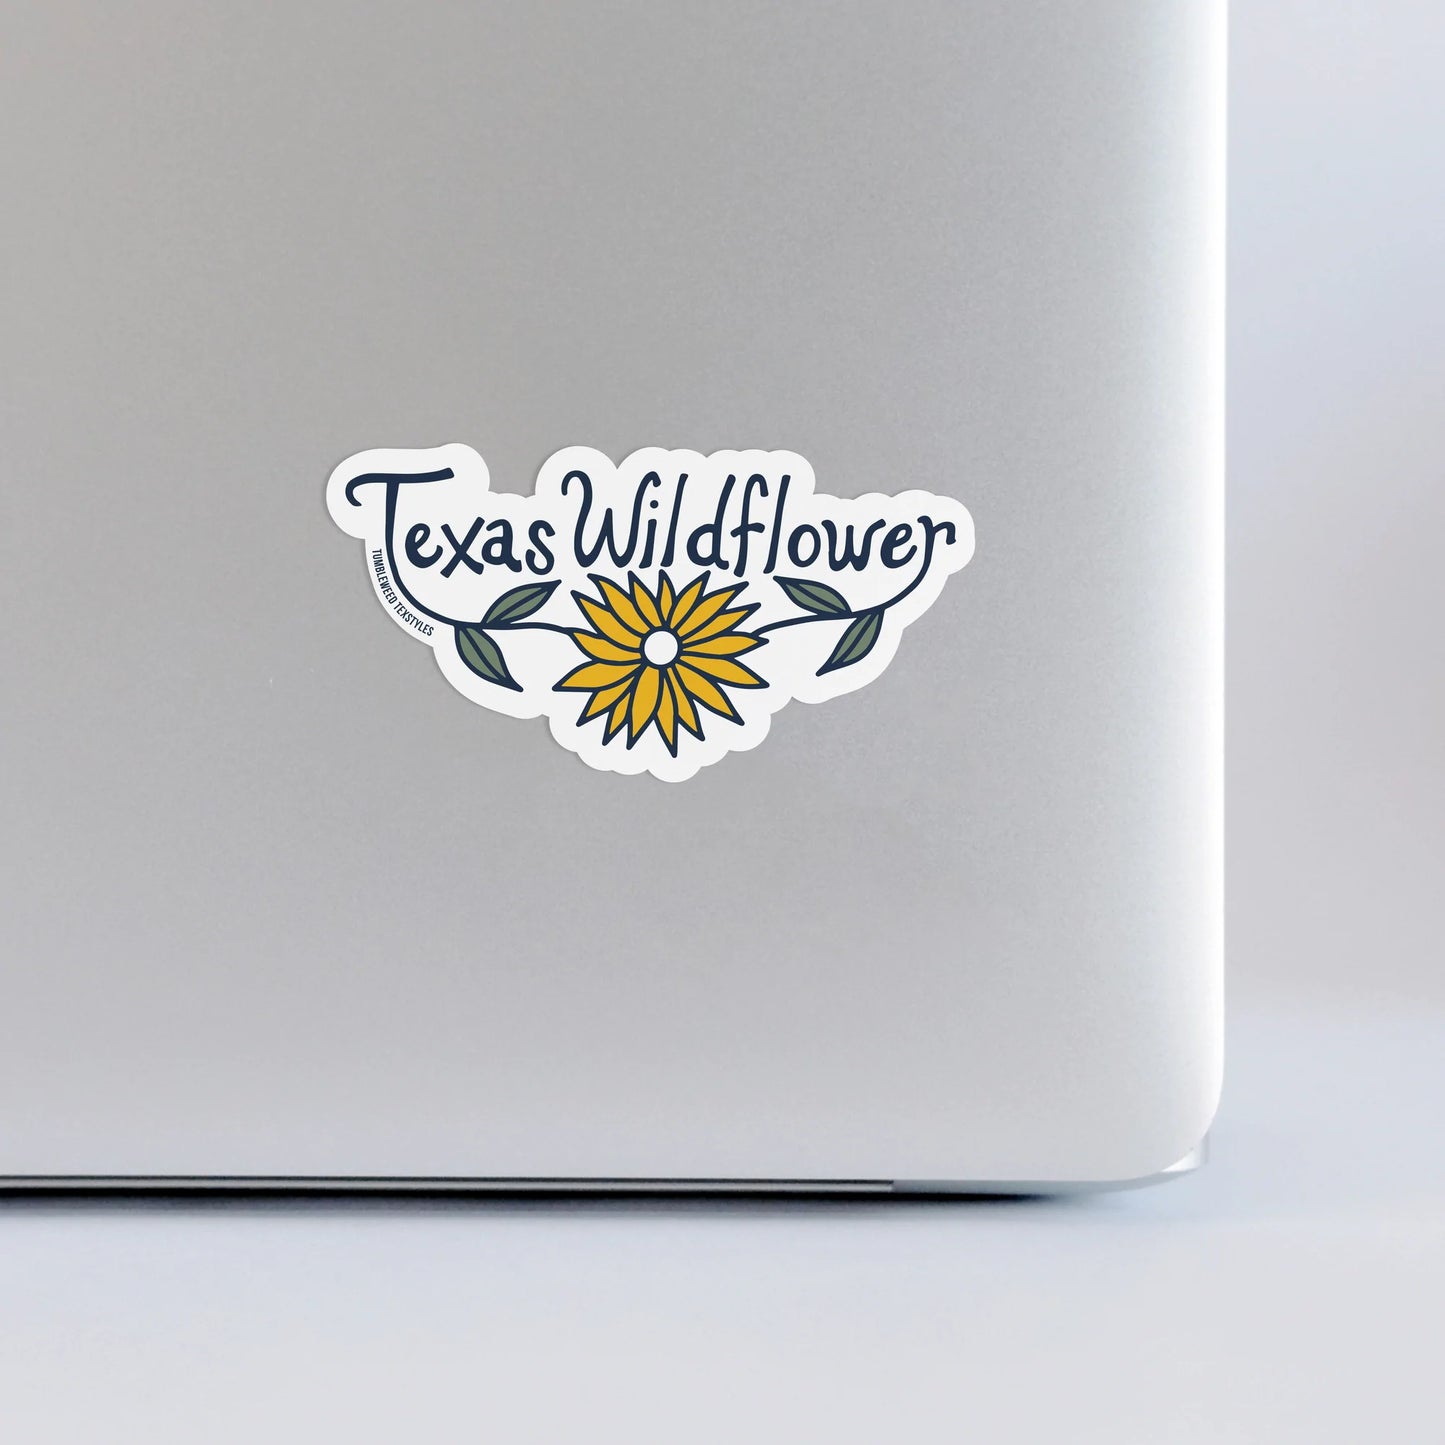 Texas Marigold Wildflower Sticker